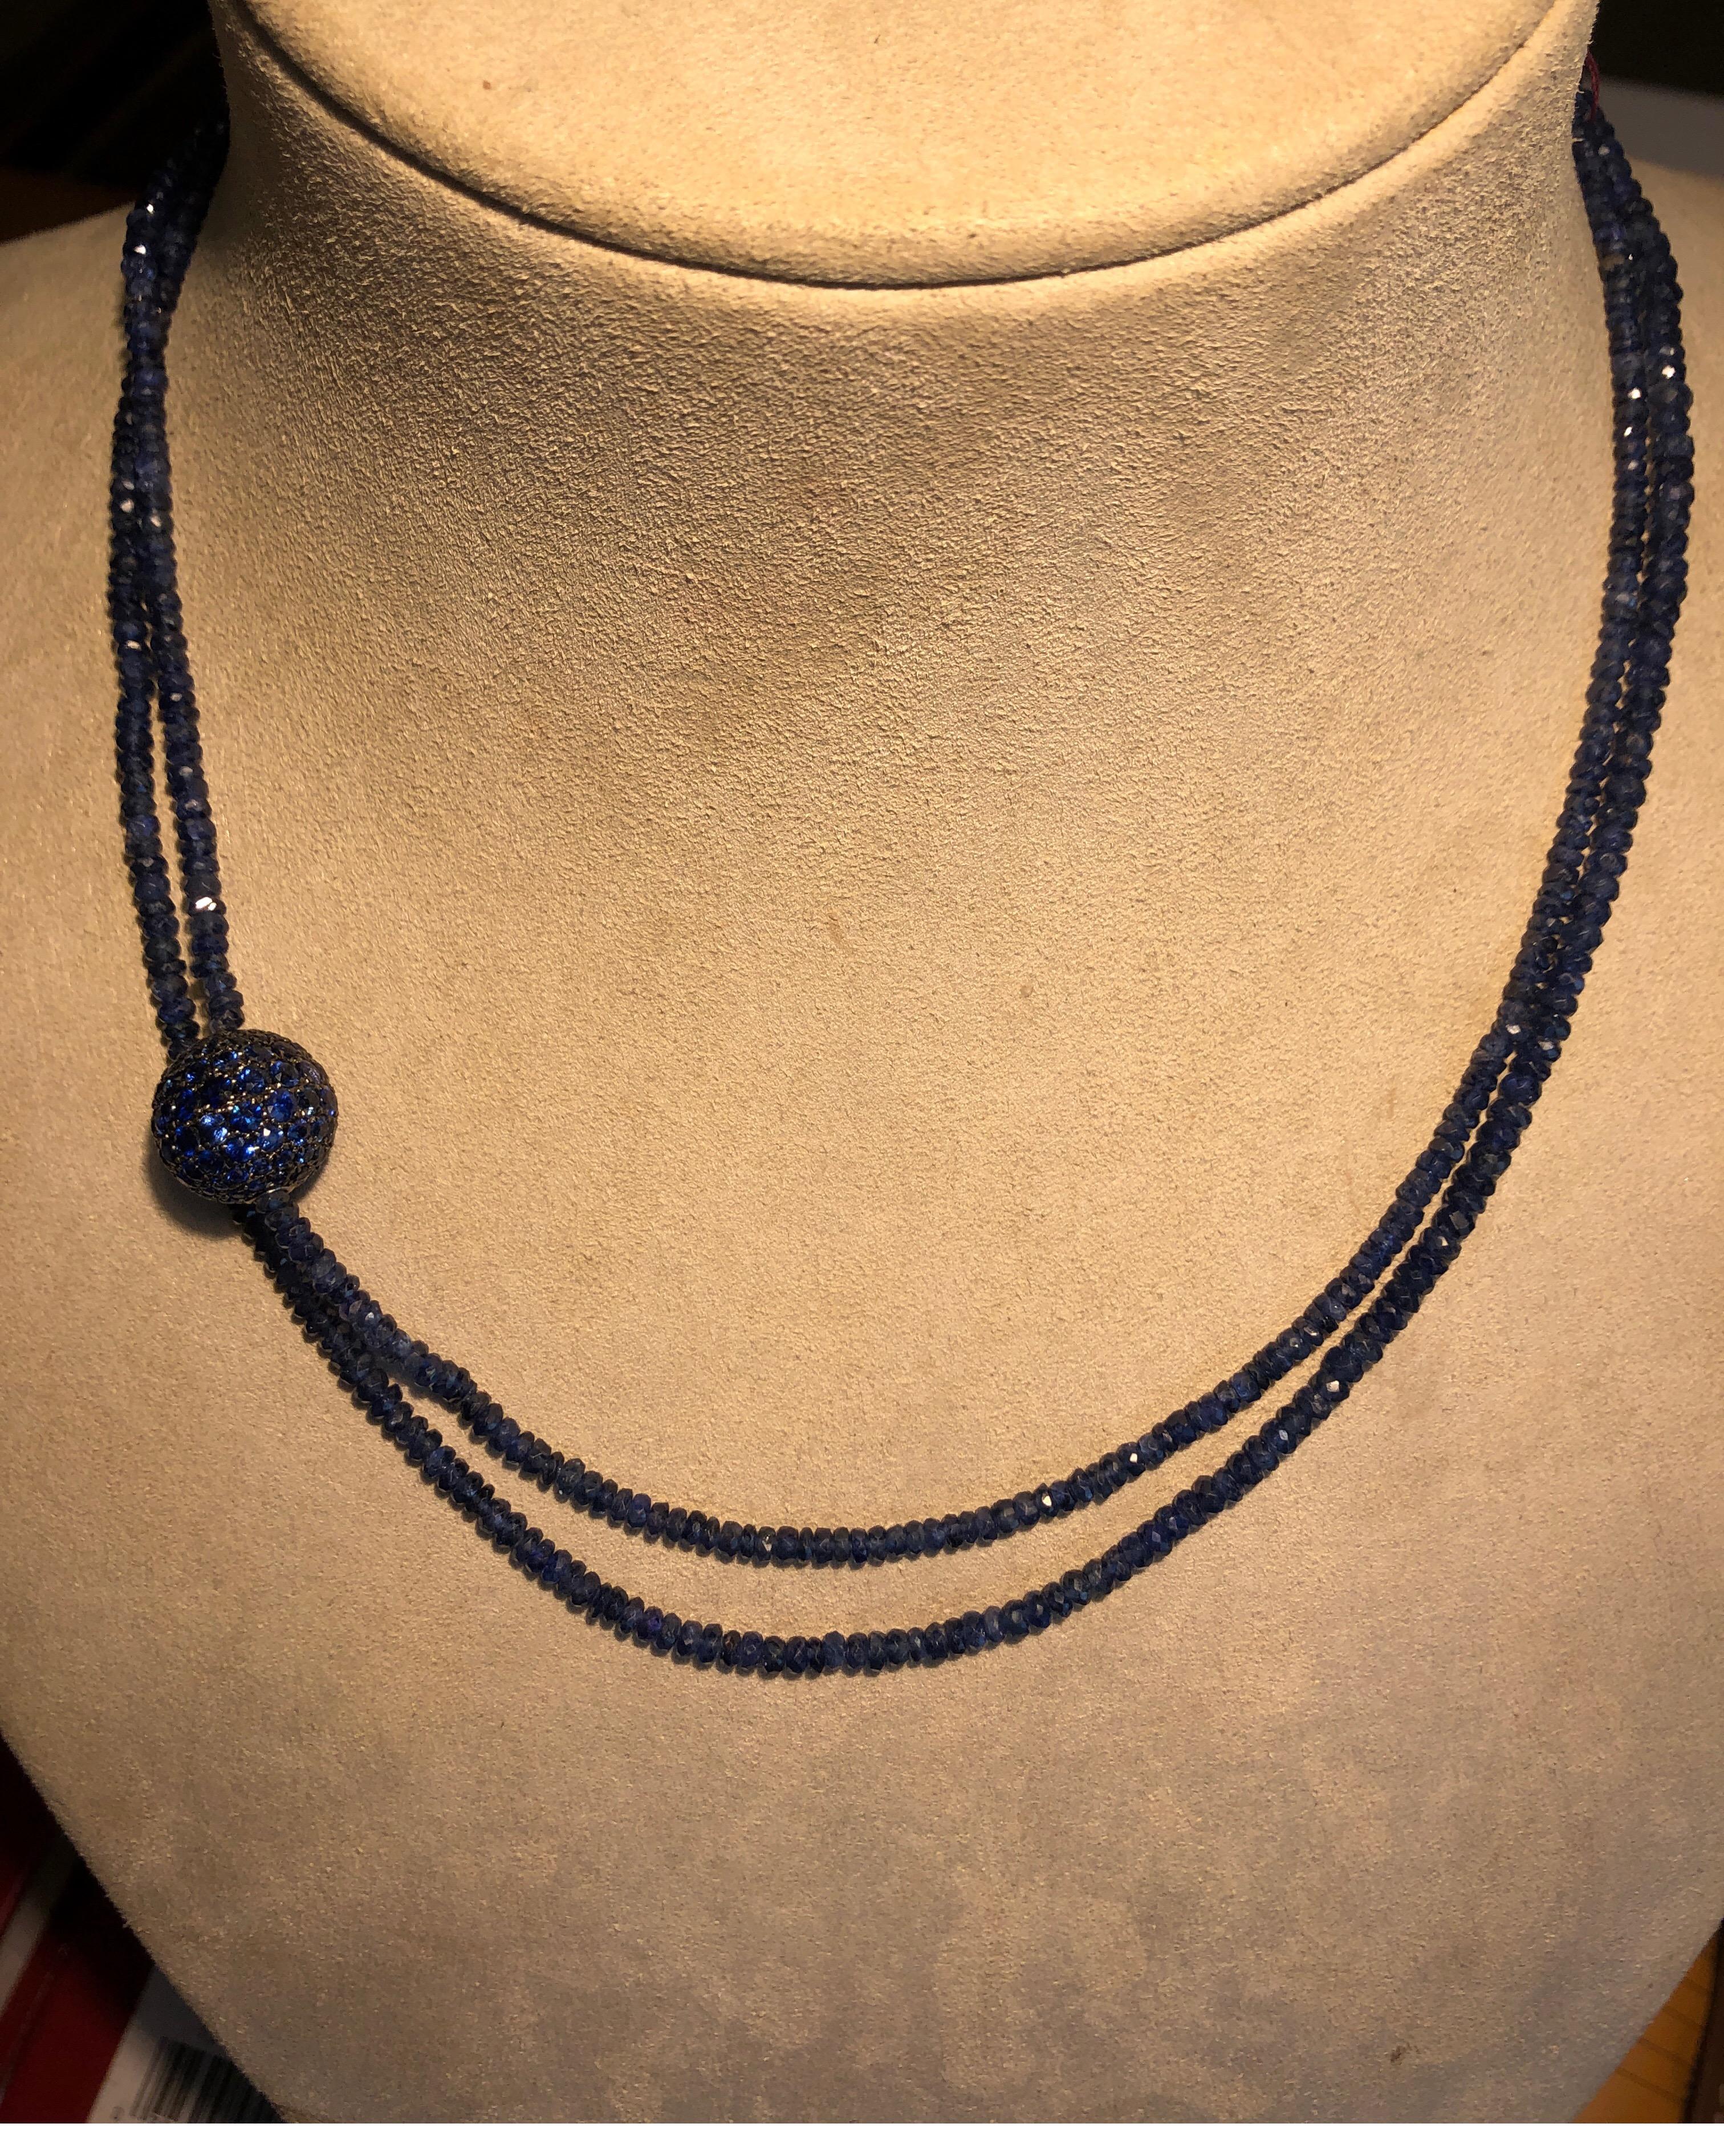 collier en or blanc 18 carats avec des perles de saphir bleu brut et une boule décorative de saphir bleu de 13 mm, peut être porté long ou doublé, 38 pouces de long.
Dernier prix de vente 8000